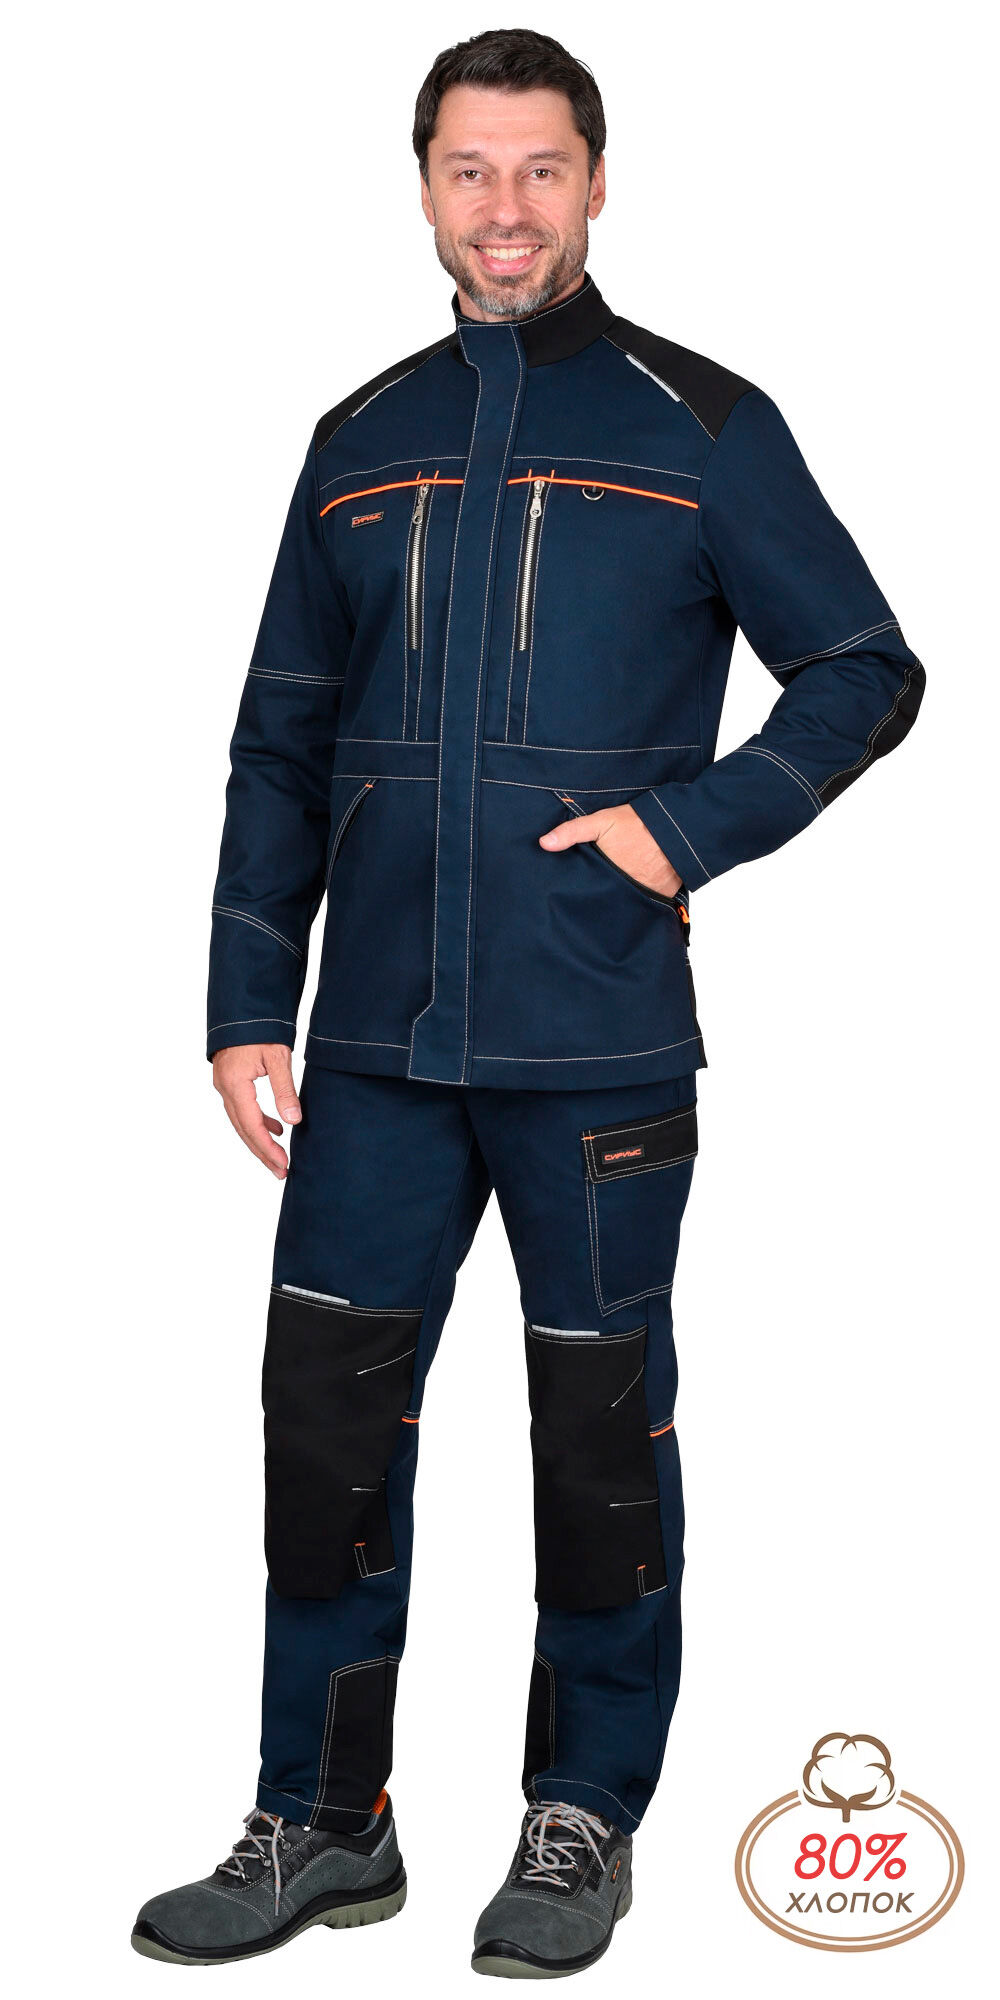 Куртка ШАТЛ-РОСС удлиненная синяя с черным, 80%; х/б, пл. 260 г/кв.м